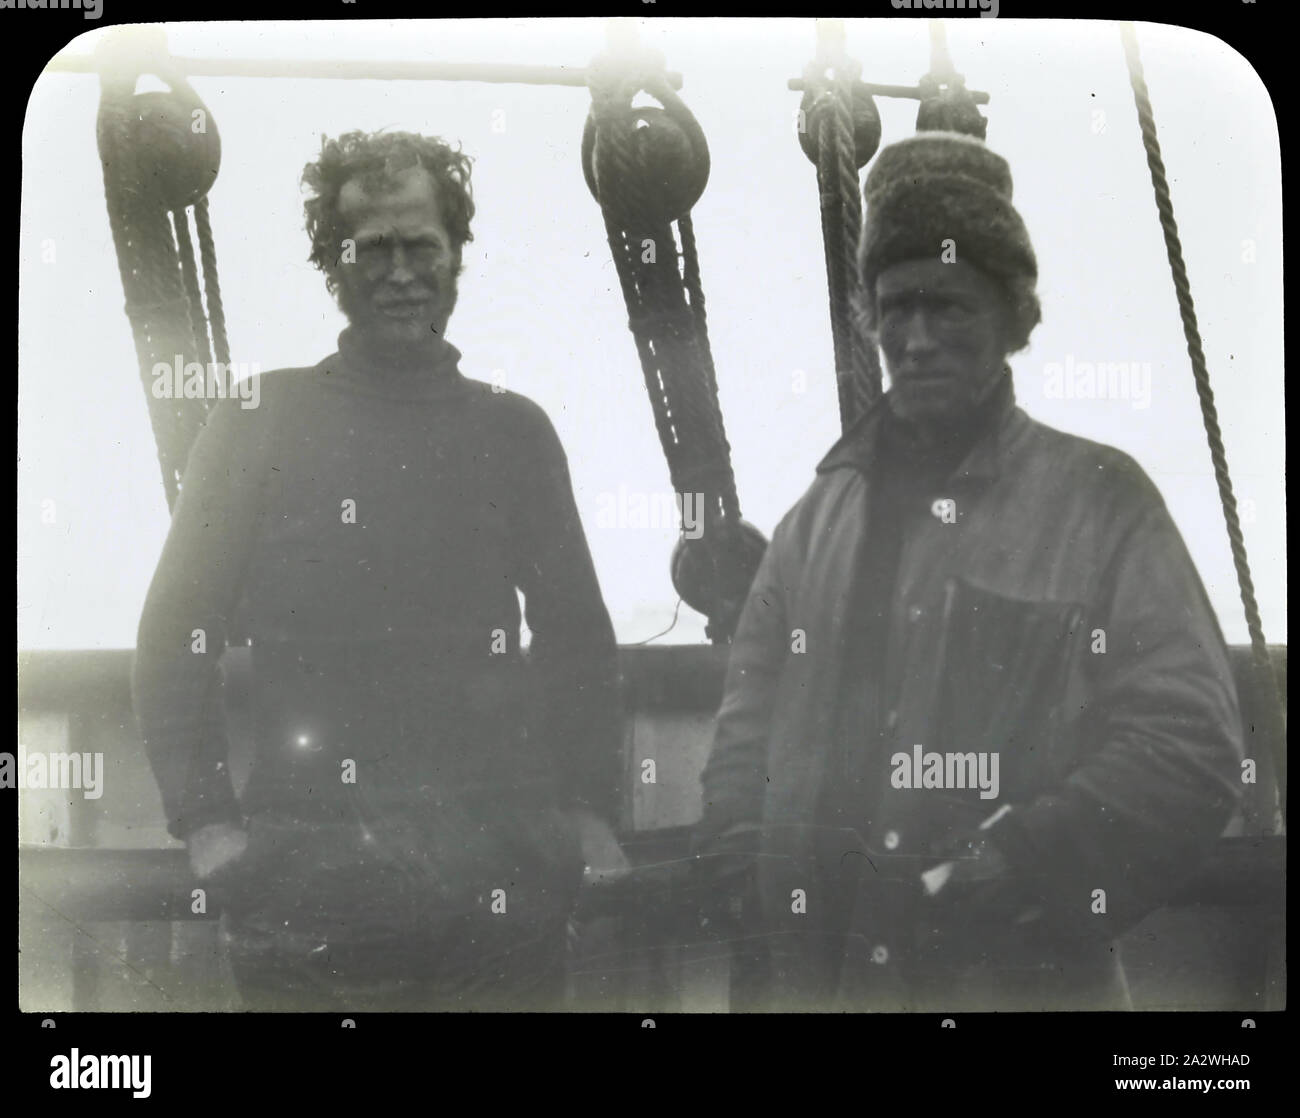 Linterna Slide - Expedición Antártica Británica, dos hombres en el barco, la Antártida, 1907-1909, linterna diapositiva en blanco y negro representando a dos miembros de la Expedición Antártica Británica a bordo de un buque en 1907-1909 Foto de stock